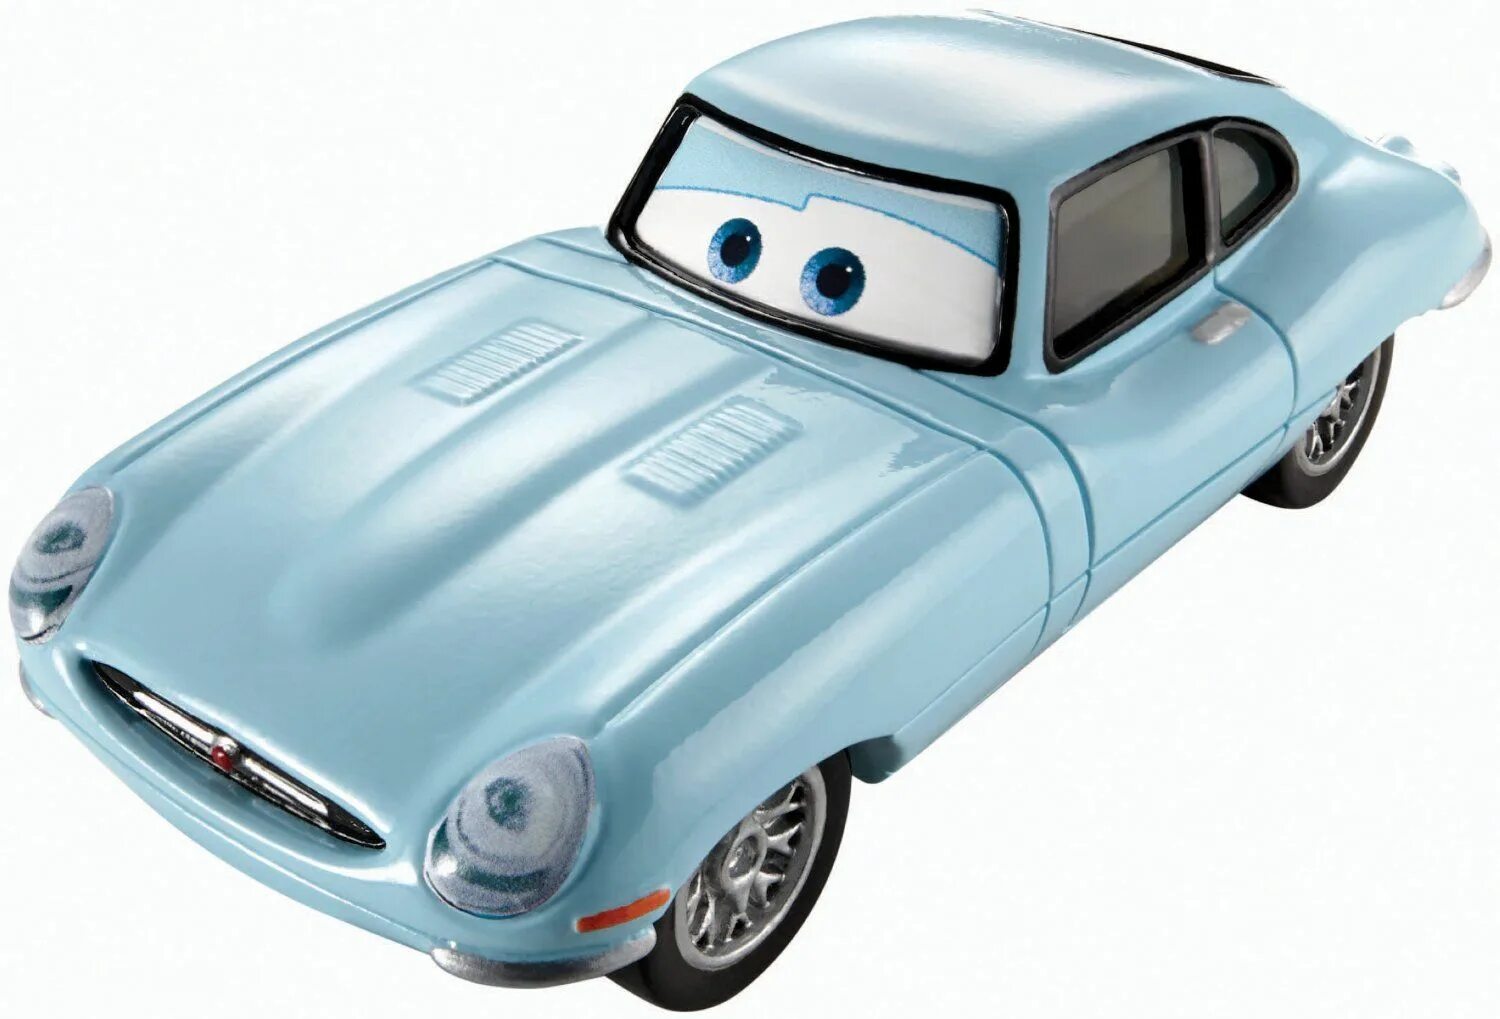 Дисней машины. Джей Шустер Тачки 2. Финн Макмисл. Тачки 2 Леланд турбо. Mattel Disney Pixar cars.